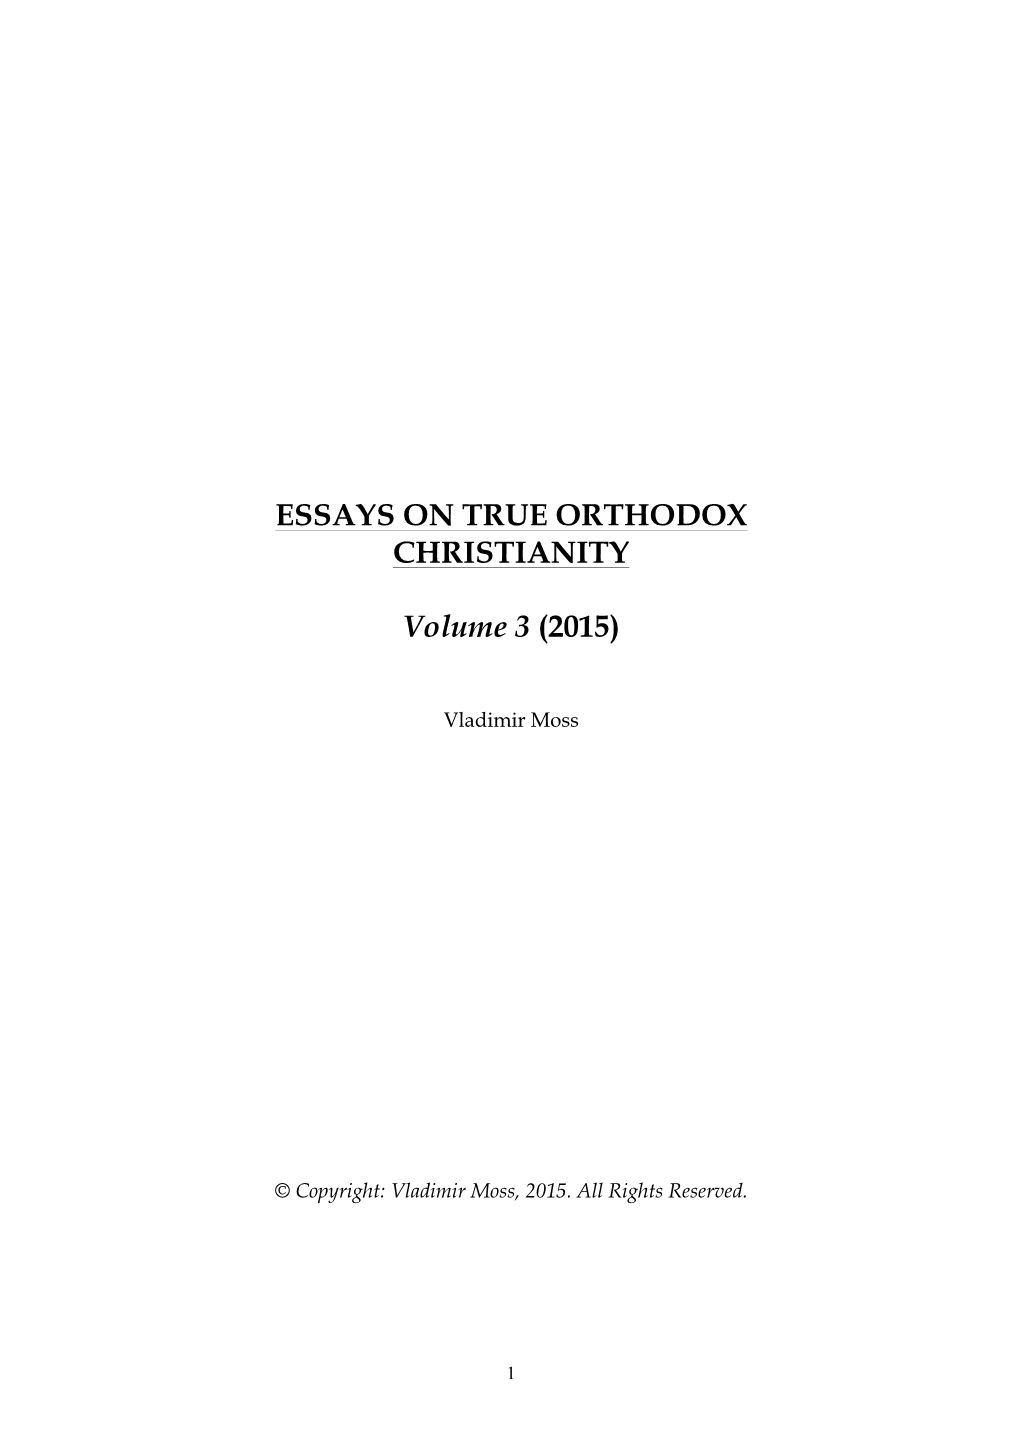 Essays on True Orthodox Christianity